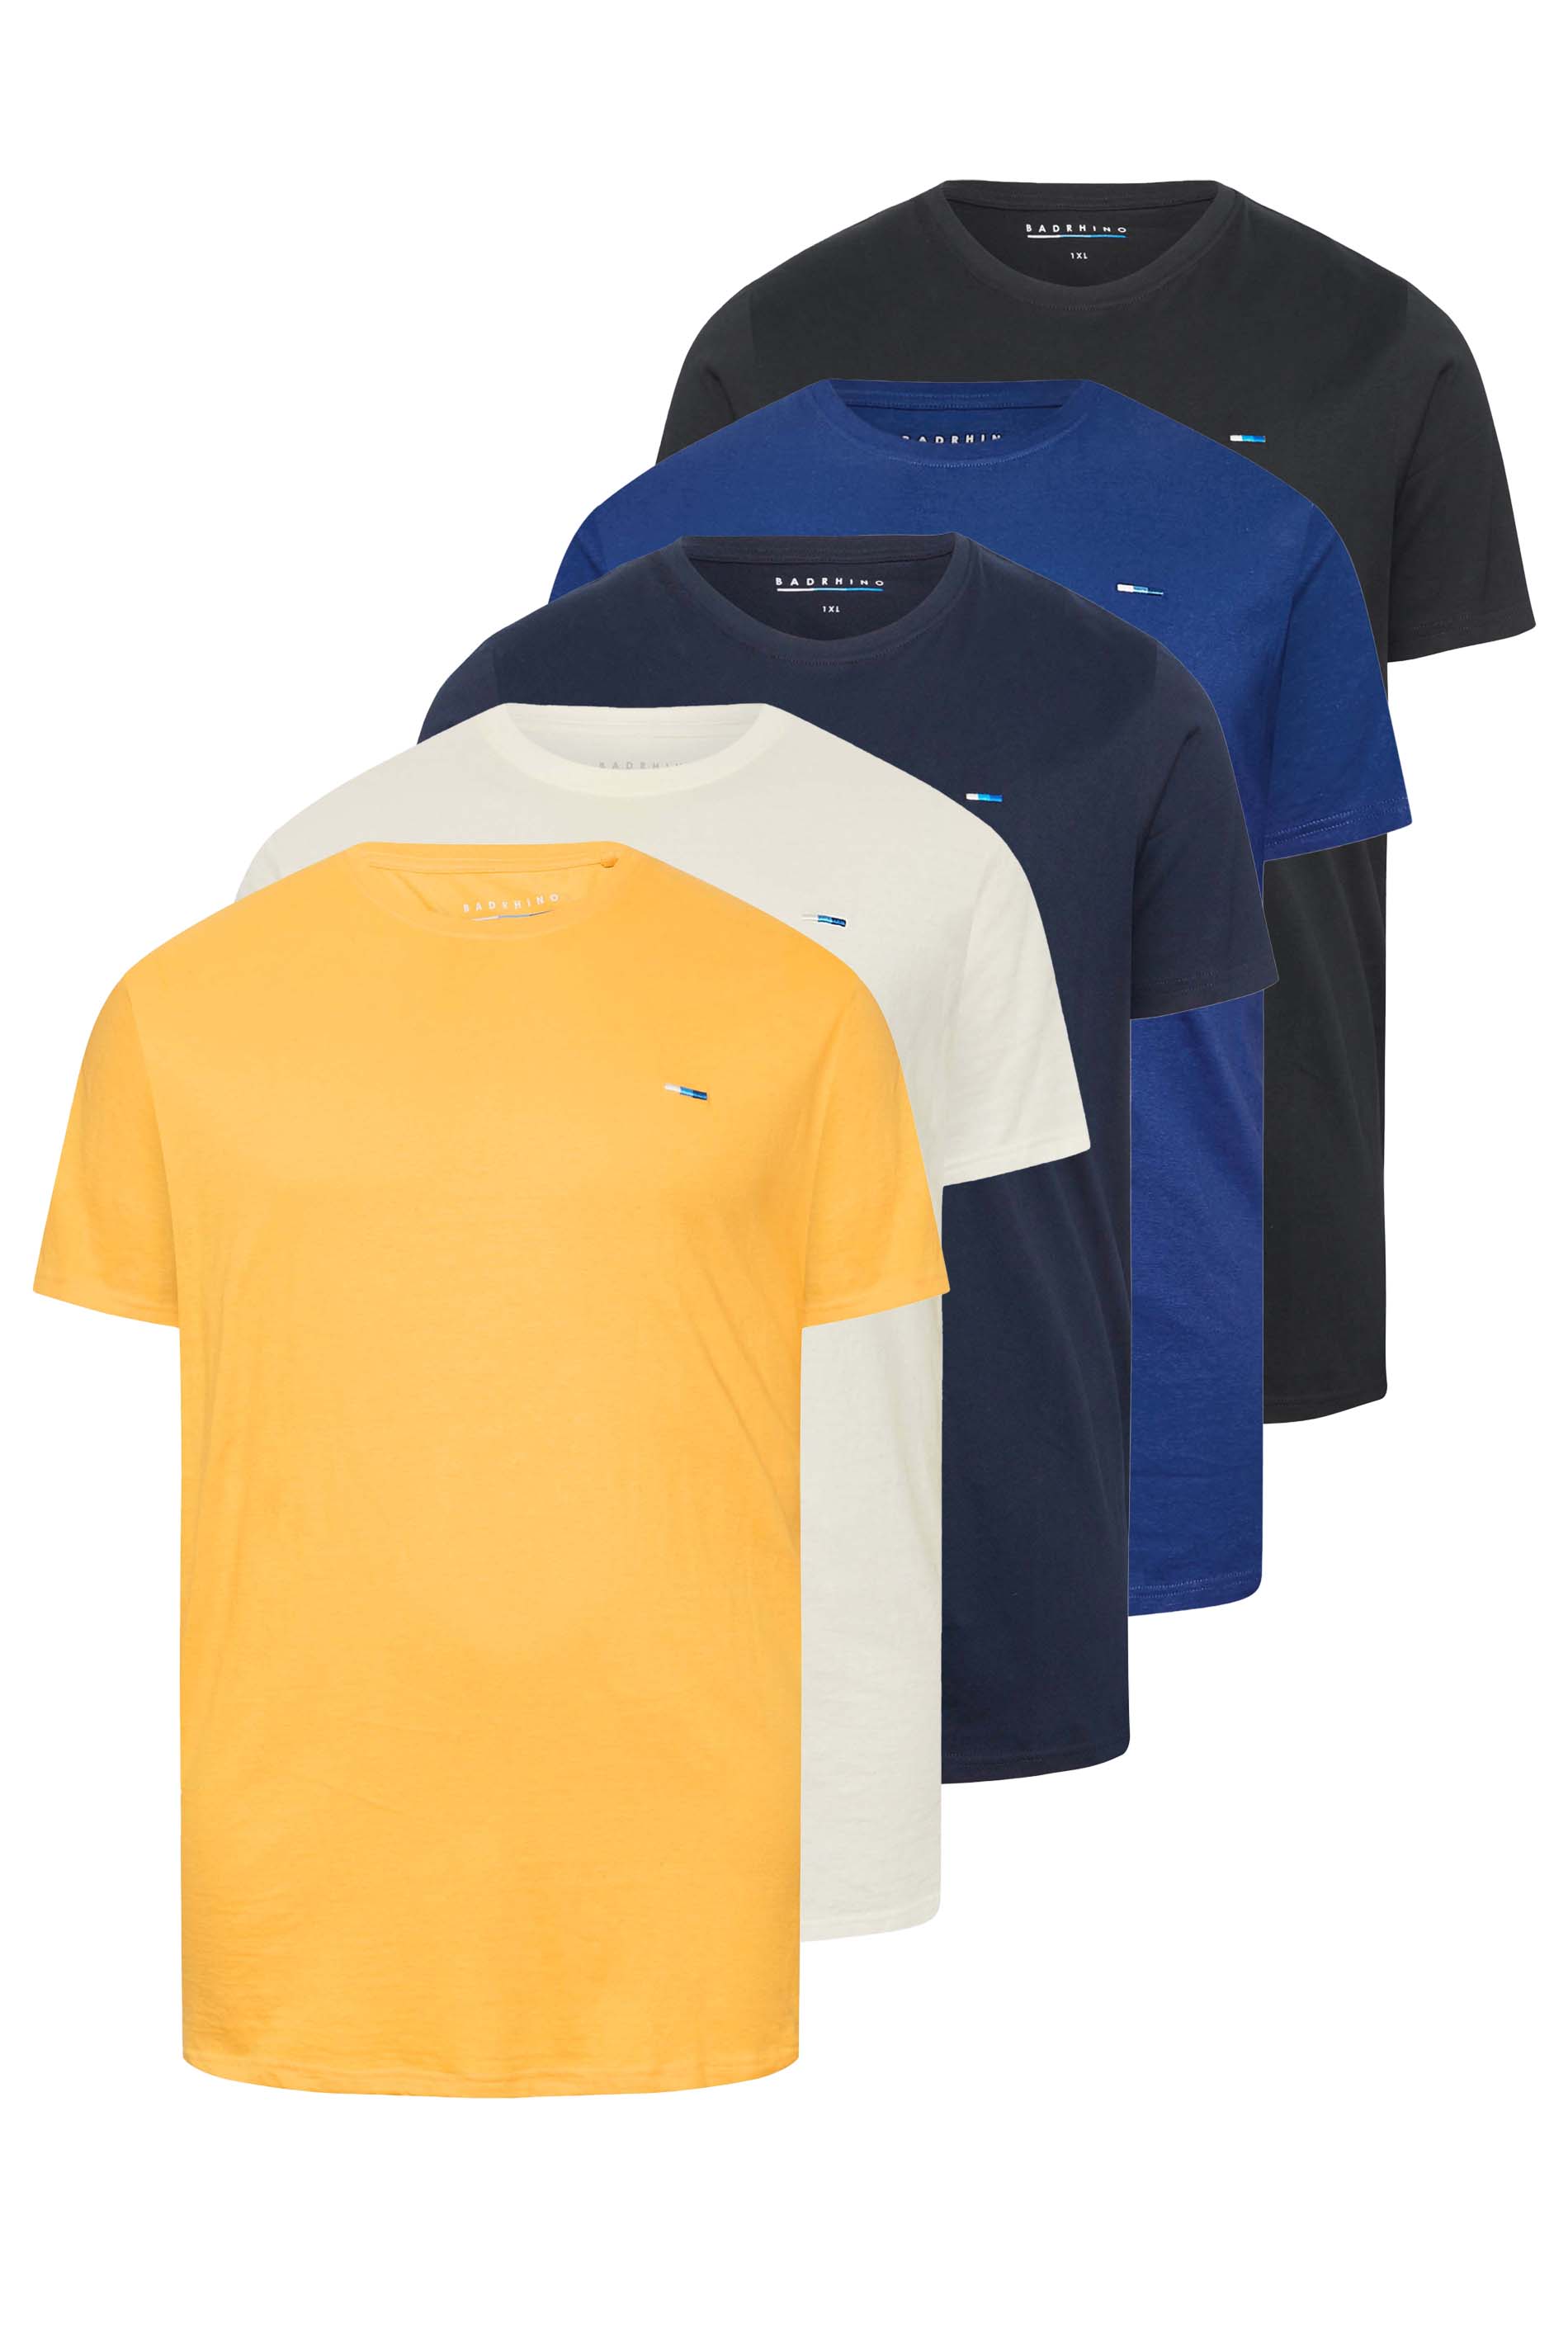 BadRhino For Less Lightweight 5 Pack T-Shirts | BadRhino 2